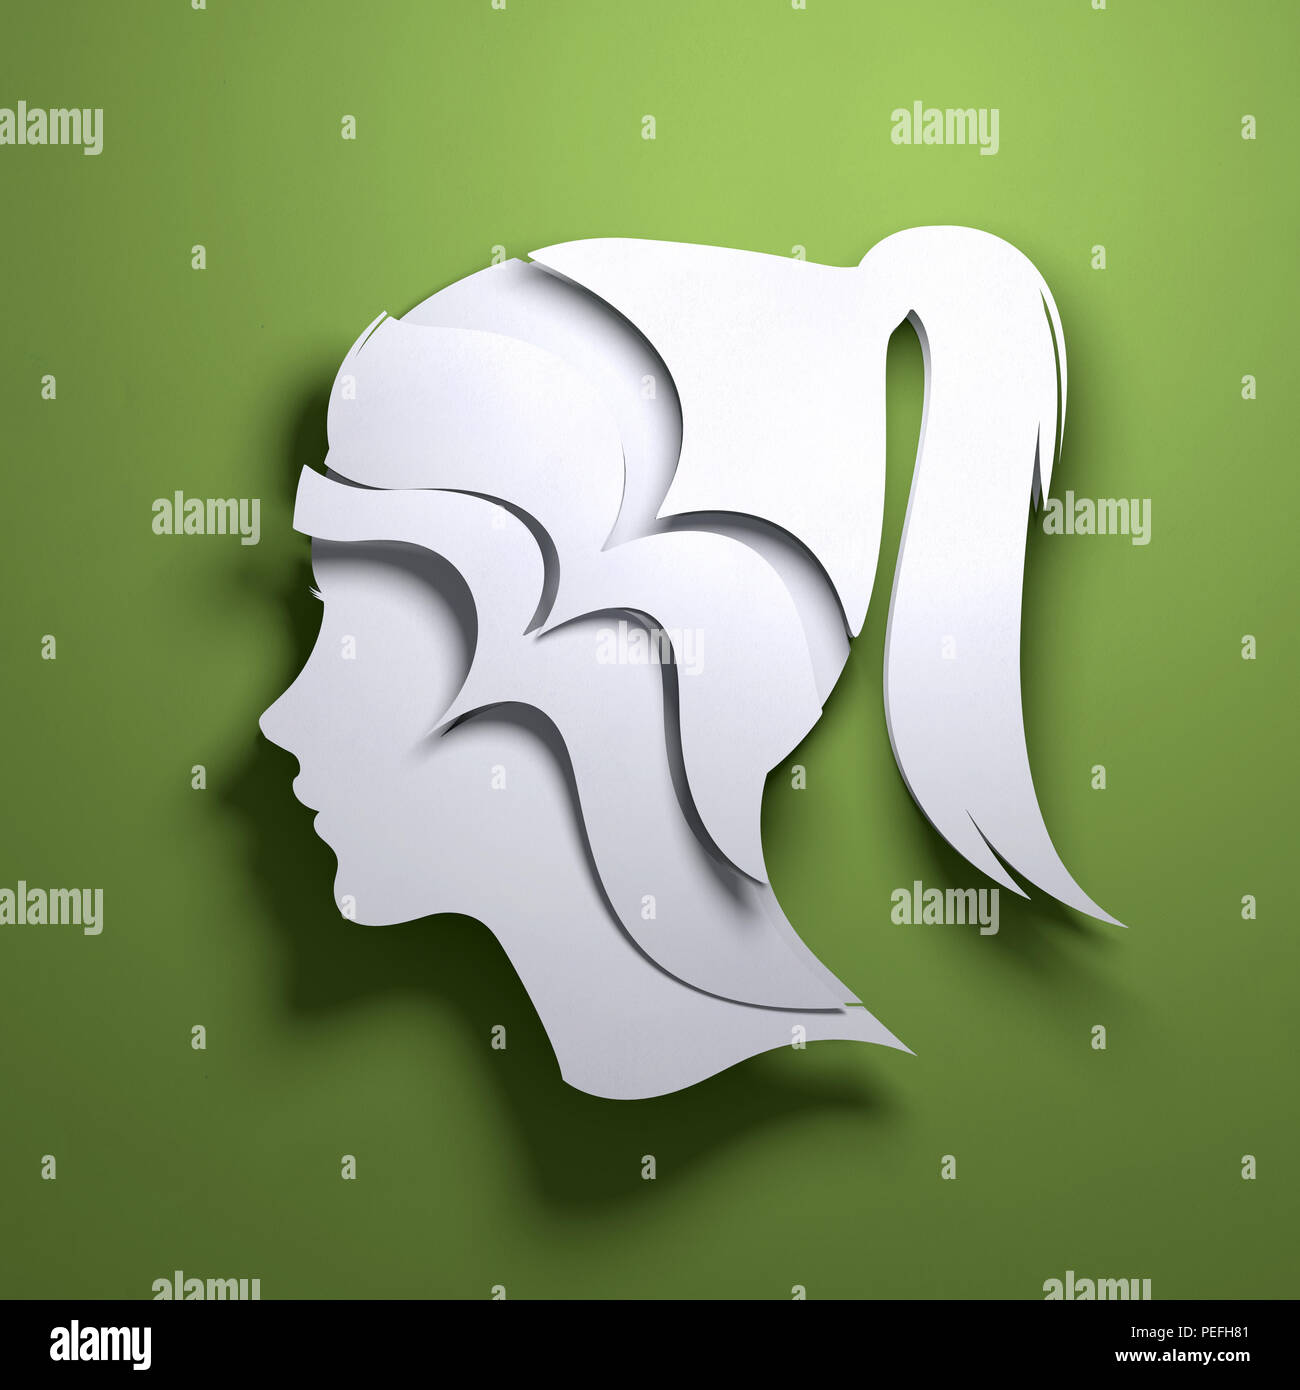 Papier plié origami. La silhouette de la tête d'une personne. Mindfulness conceptuel 3D illustration. Banque D'Images